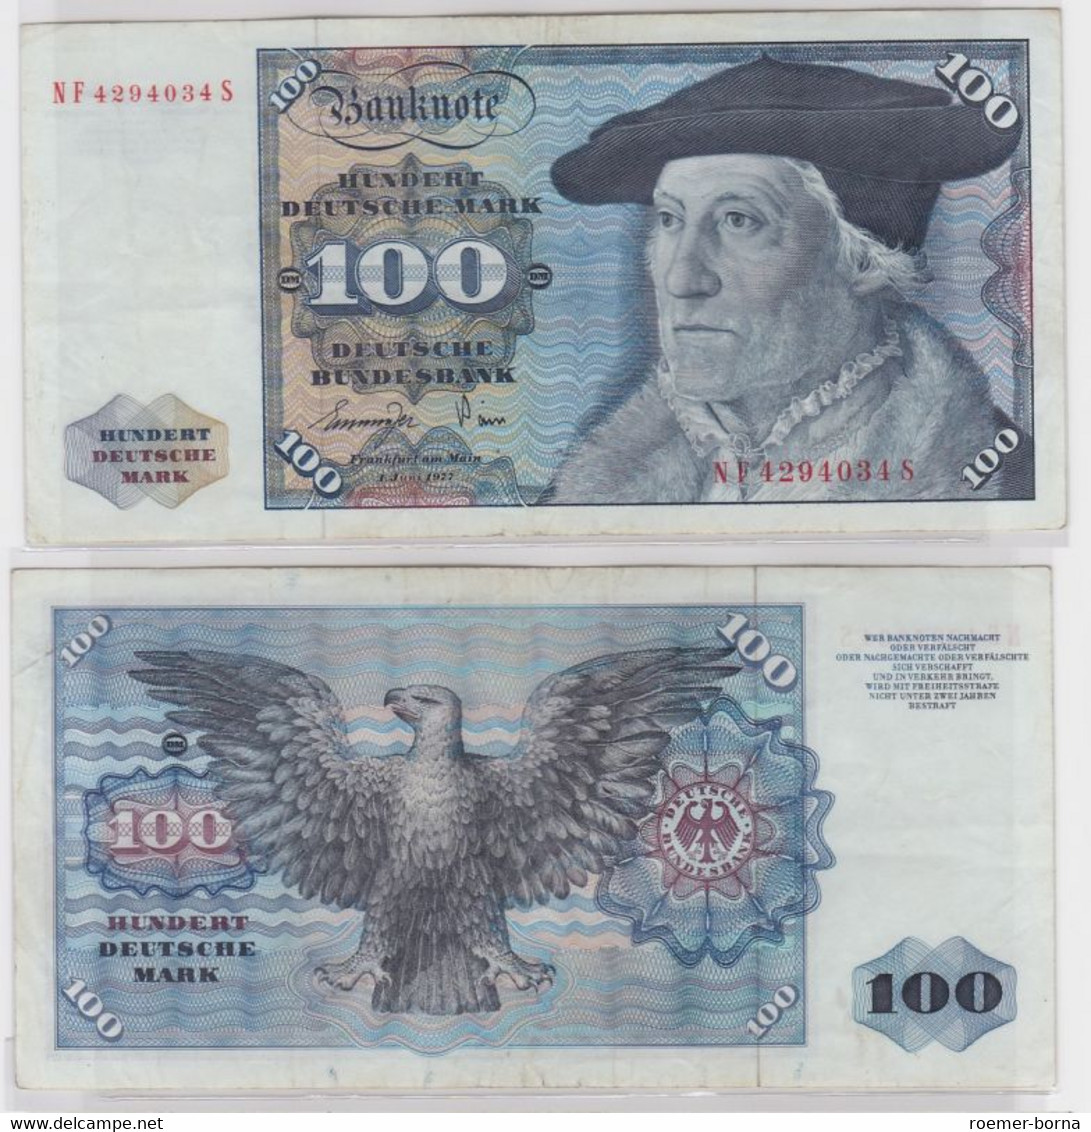 T146559 Banknote 100 DM Deutsche Mark Ro 278a Schein 1.Juni 1977 KN NF 4294034 S - 100 Deutsche Mark